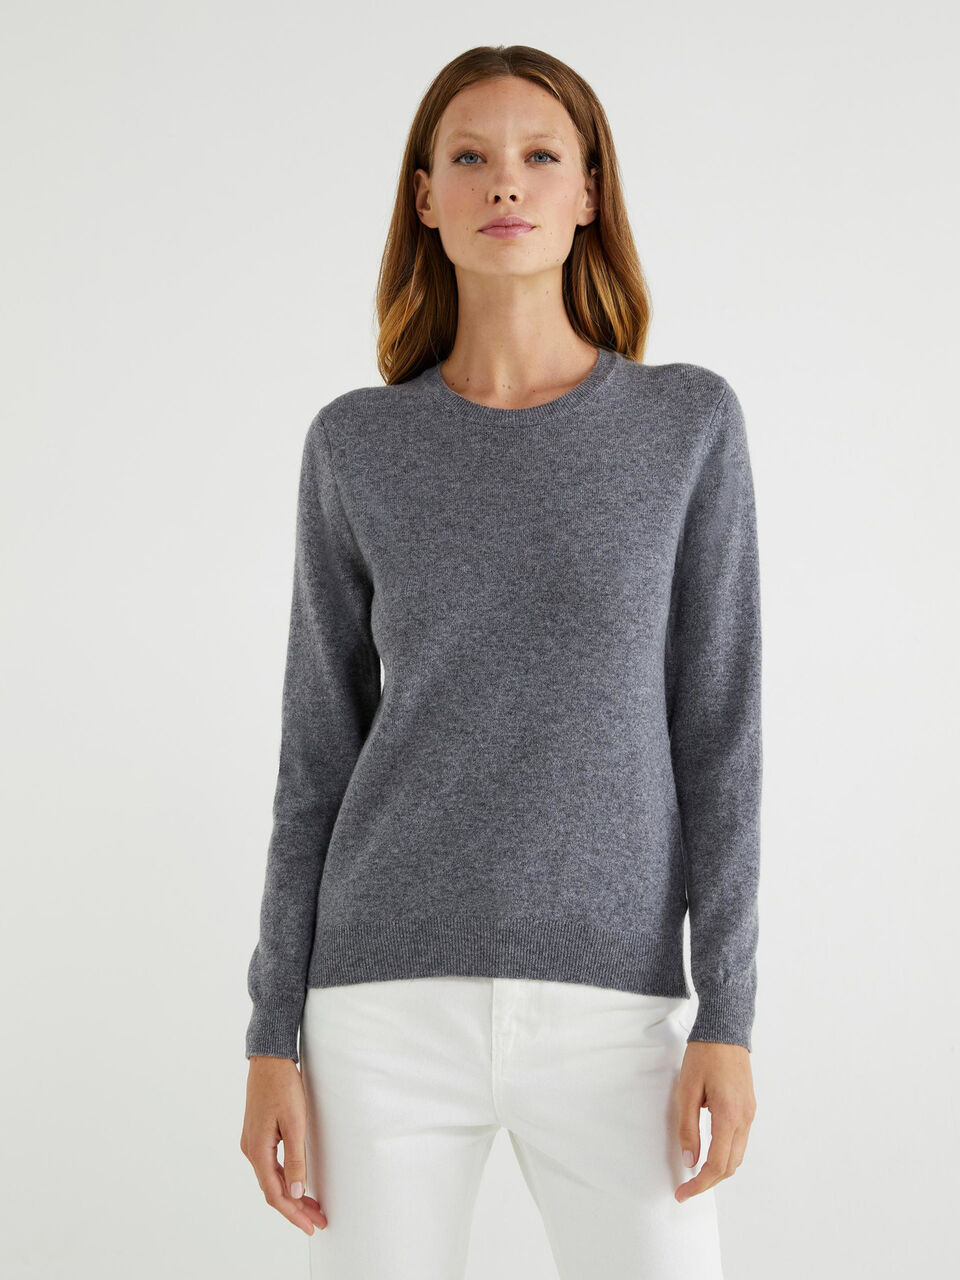 100% virgin wool crew neck sweater